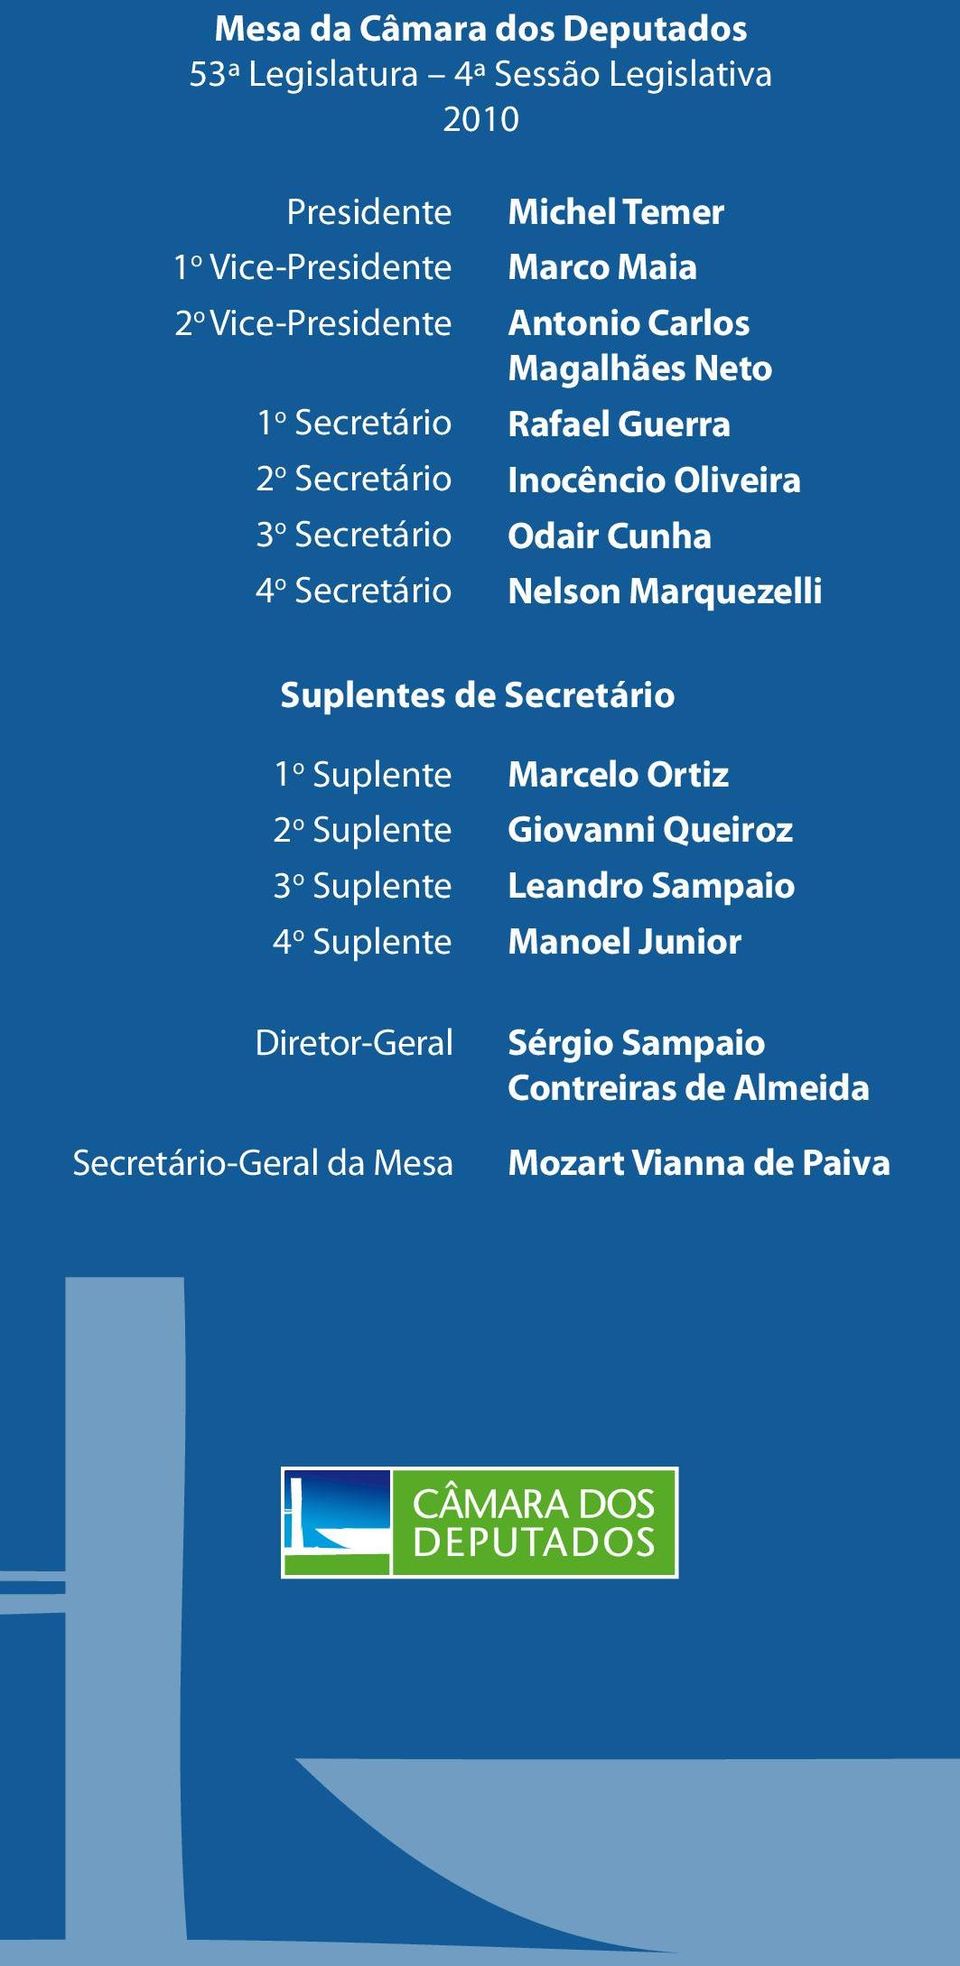 Oliveira Odair Cunha Nelson Marquezelli Suplentes de Secretário 1 o Suplente 2 o Suplente 3 o Suplente 4 o Suplente Diretor-Geral